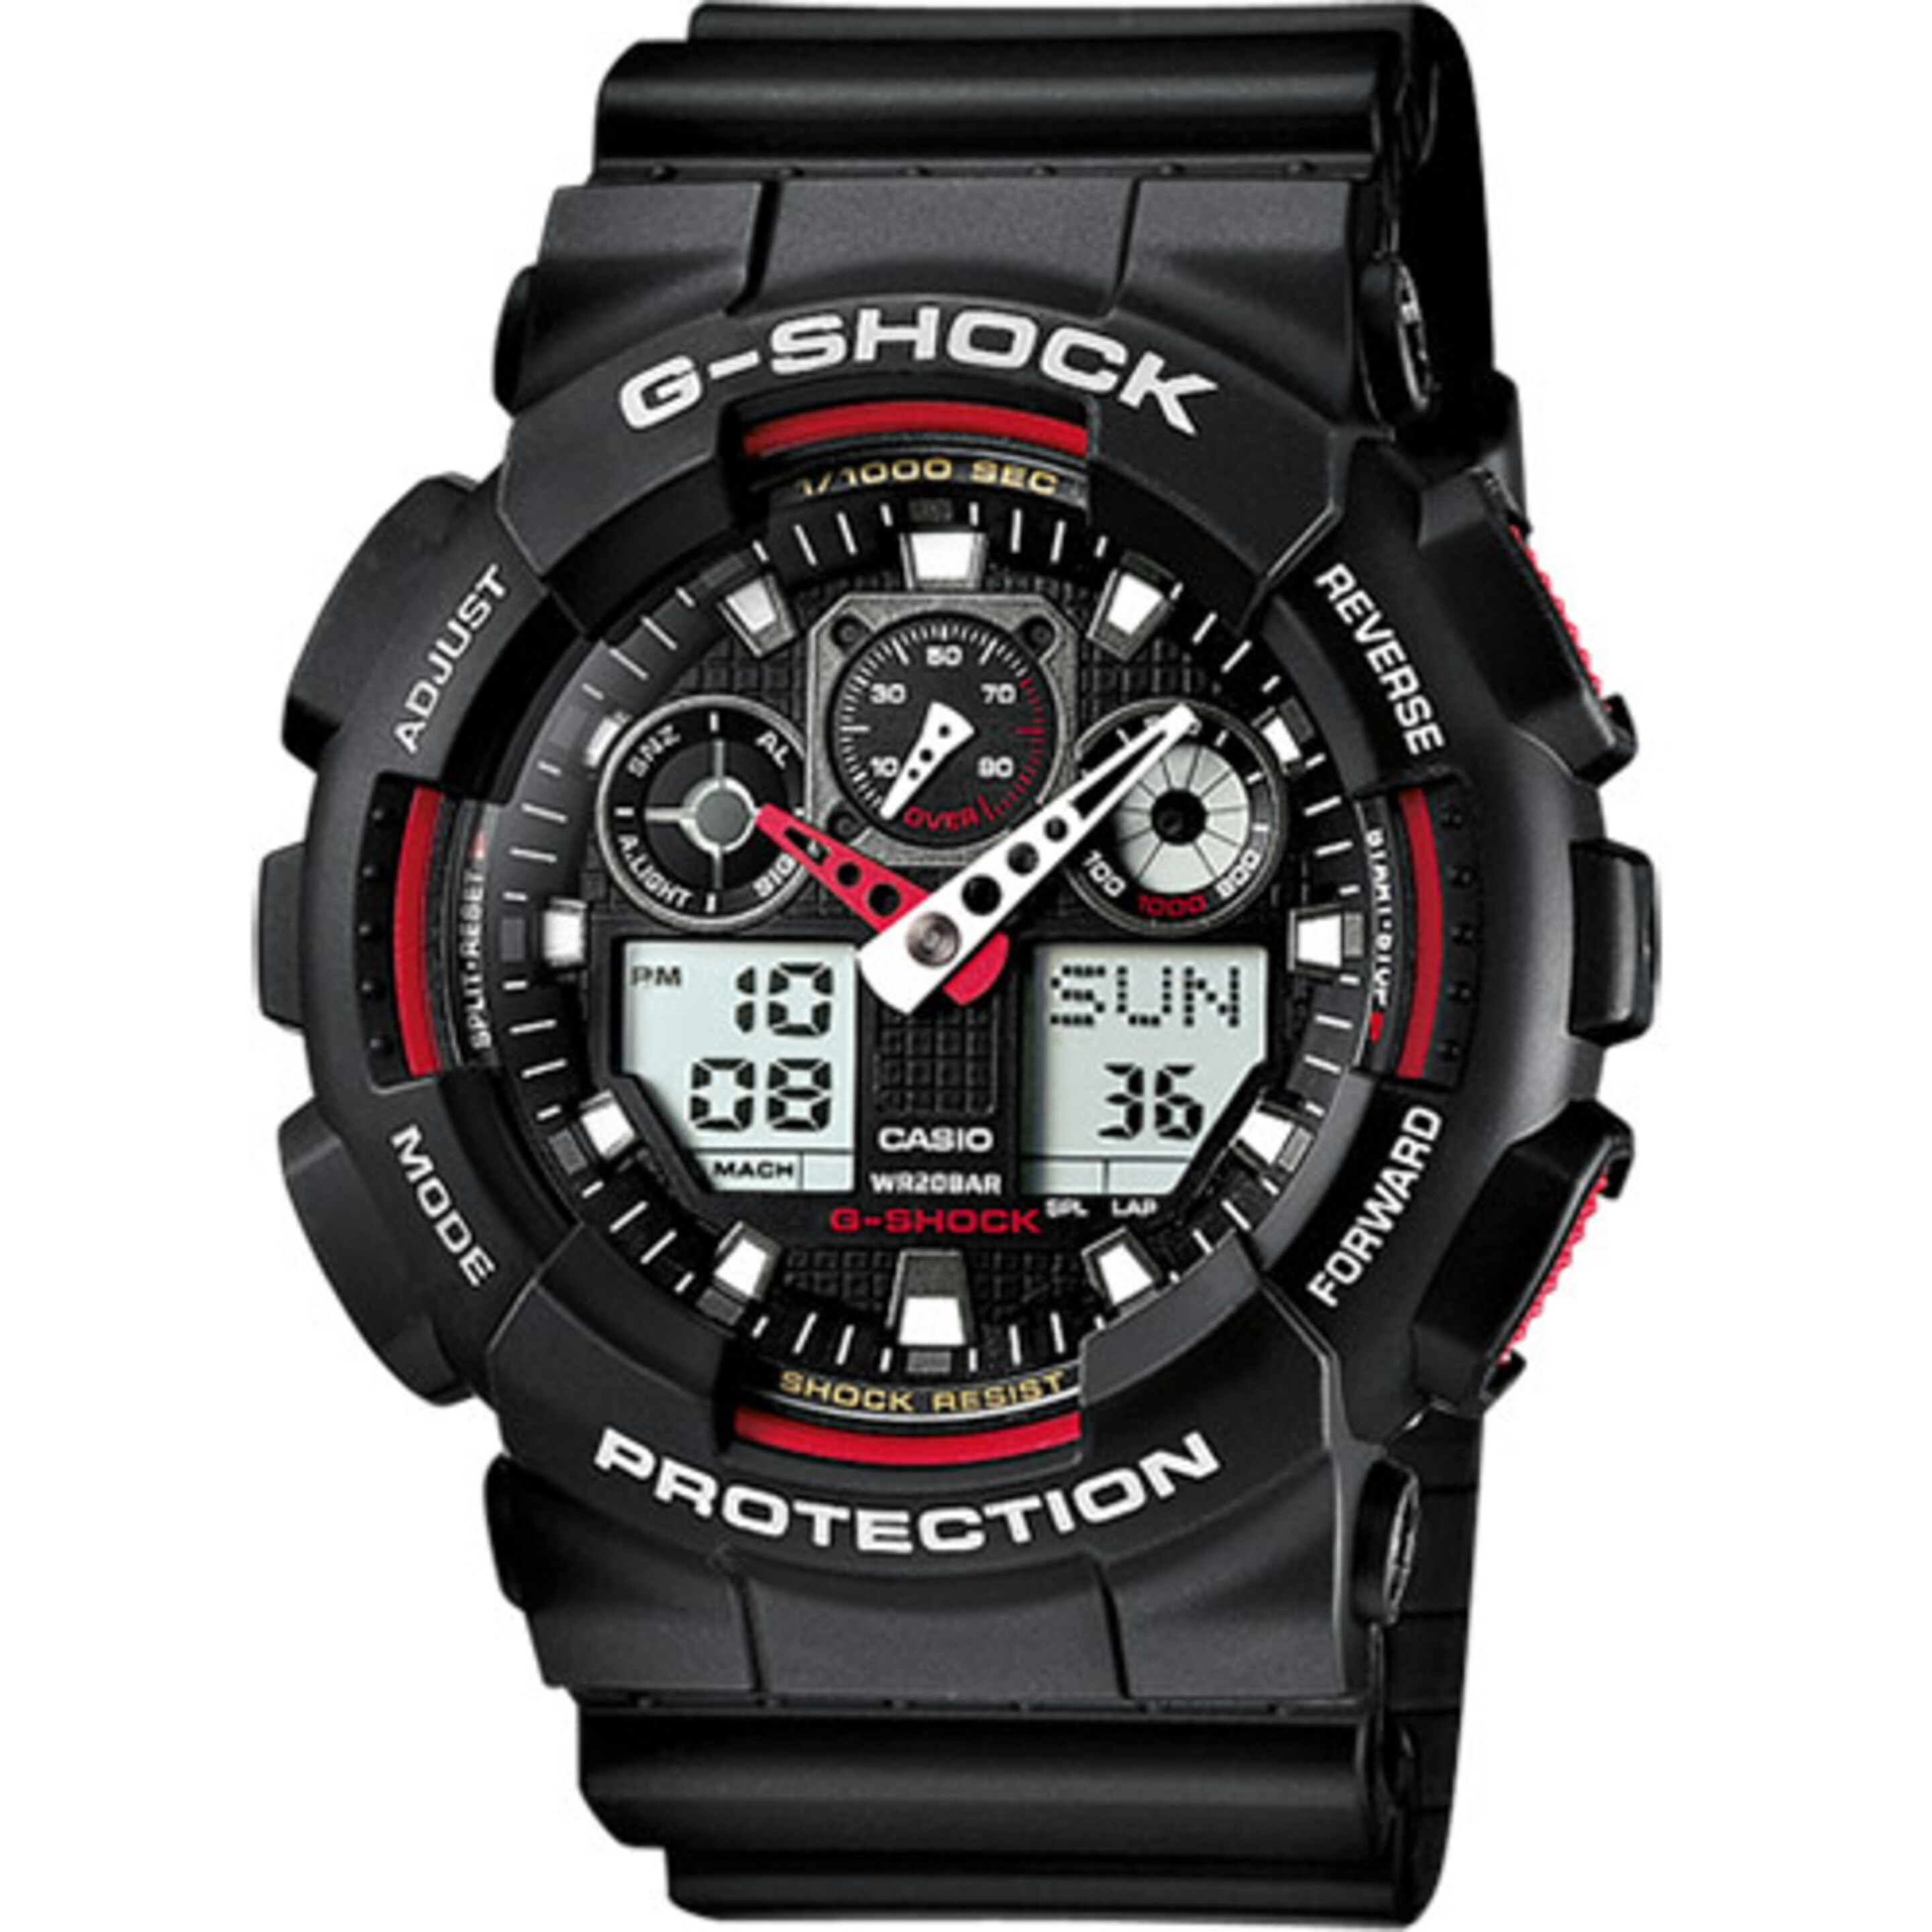 Reloj Casio G-shock Ga-100-1a4er - Reloj Deportivo  MKP